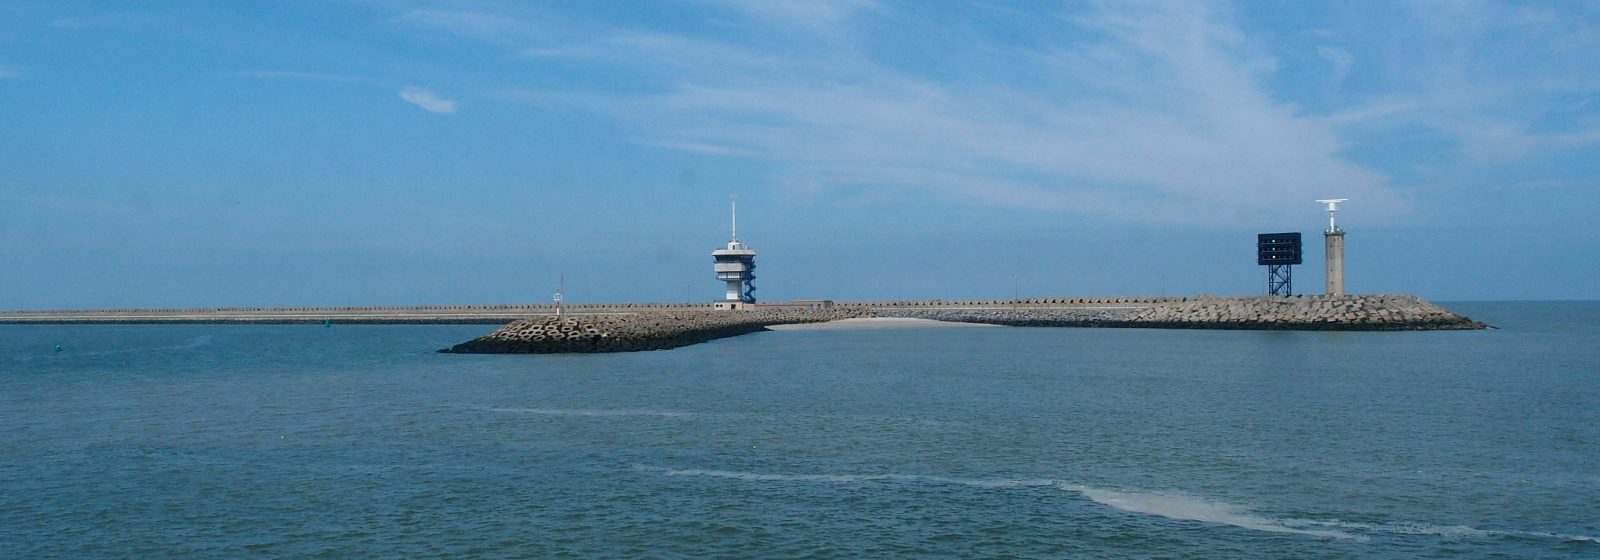 De buitengrens van de haven van Zeebrugge